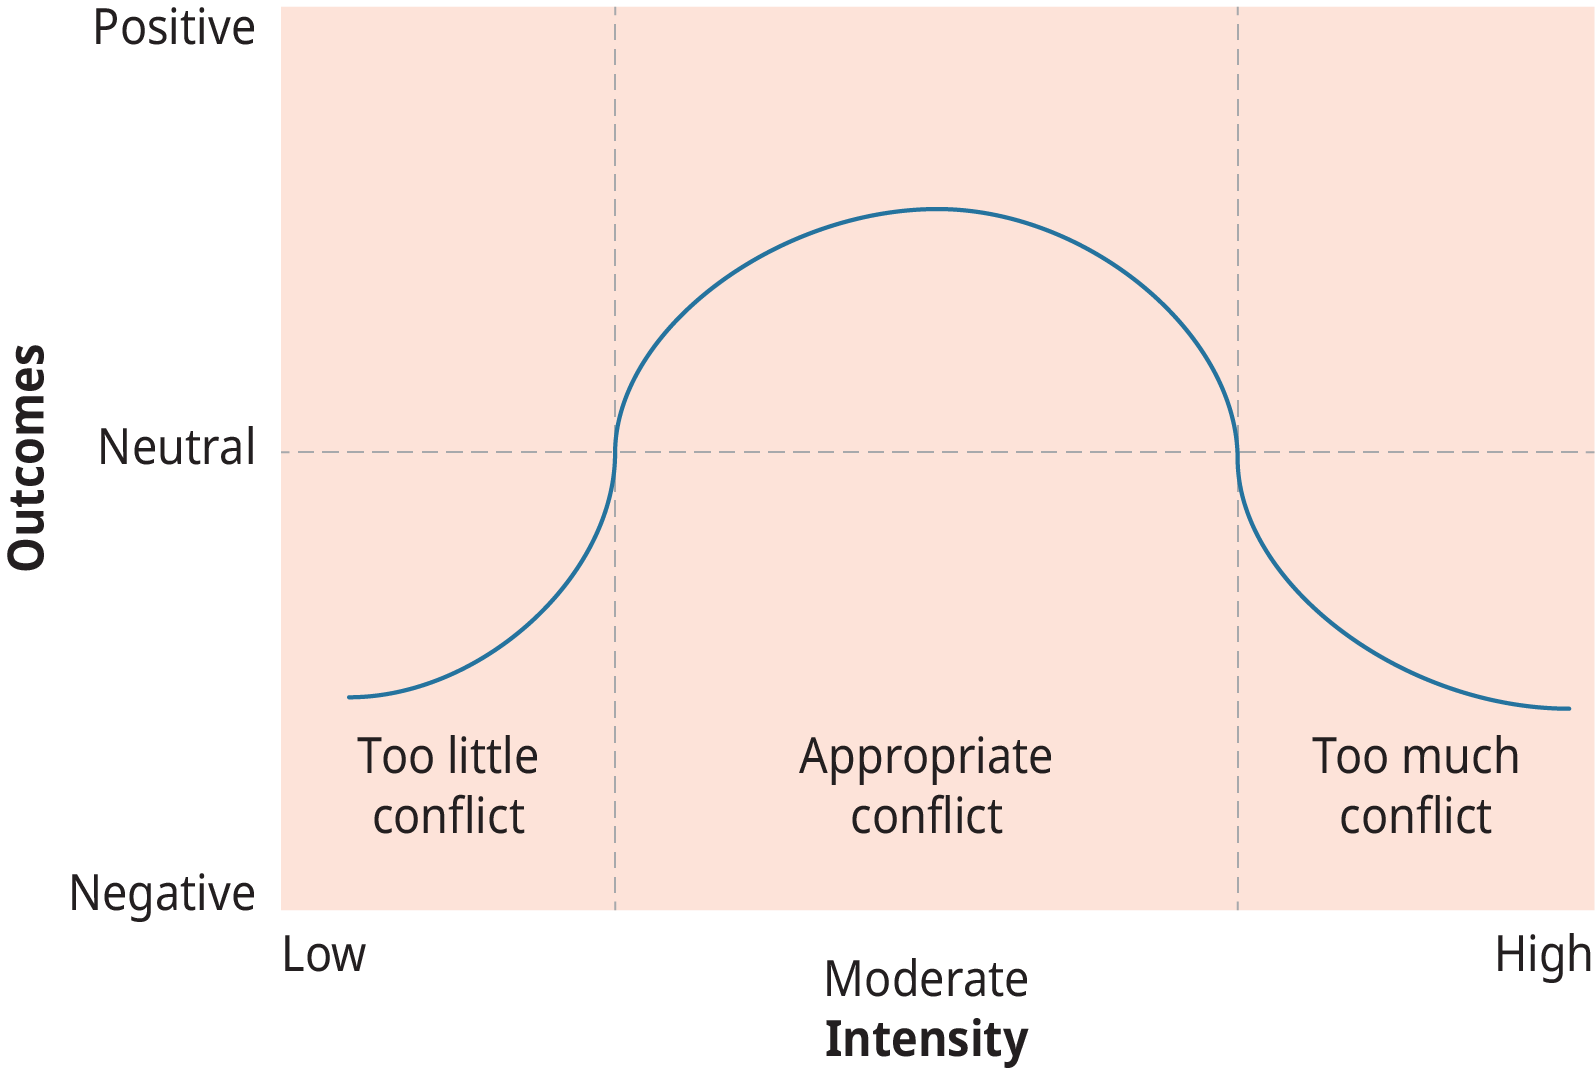 代表冲突强度与结果之间关系的图表。